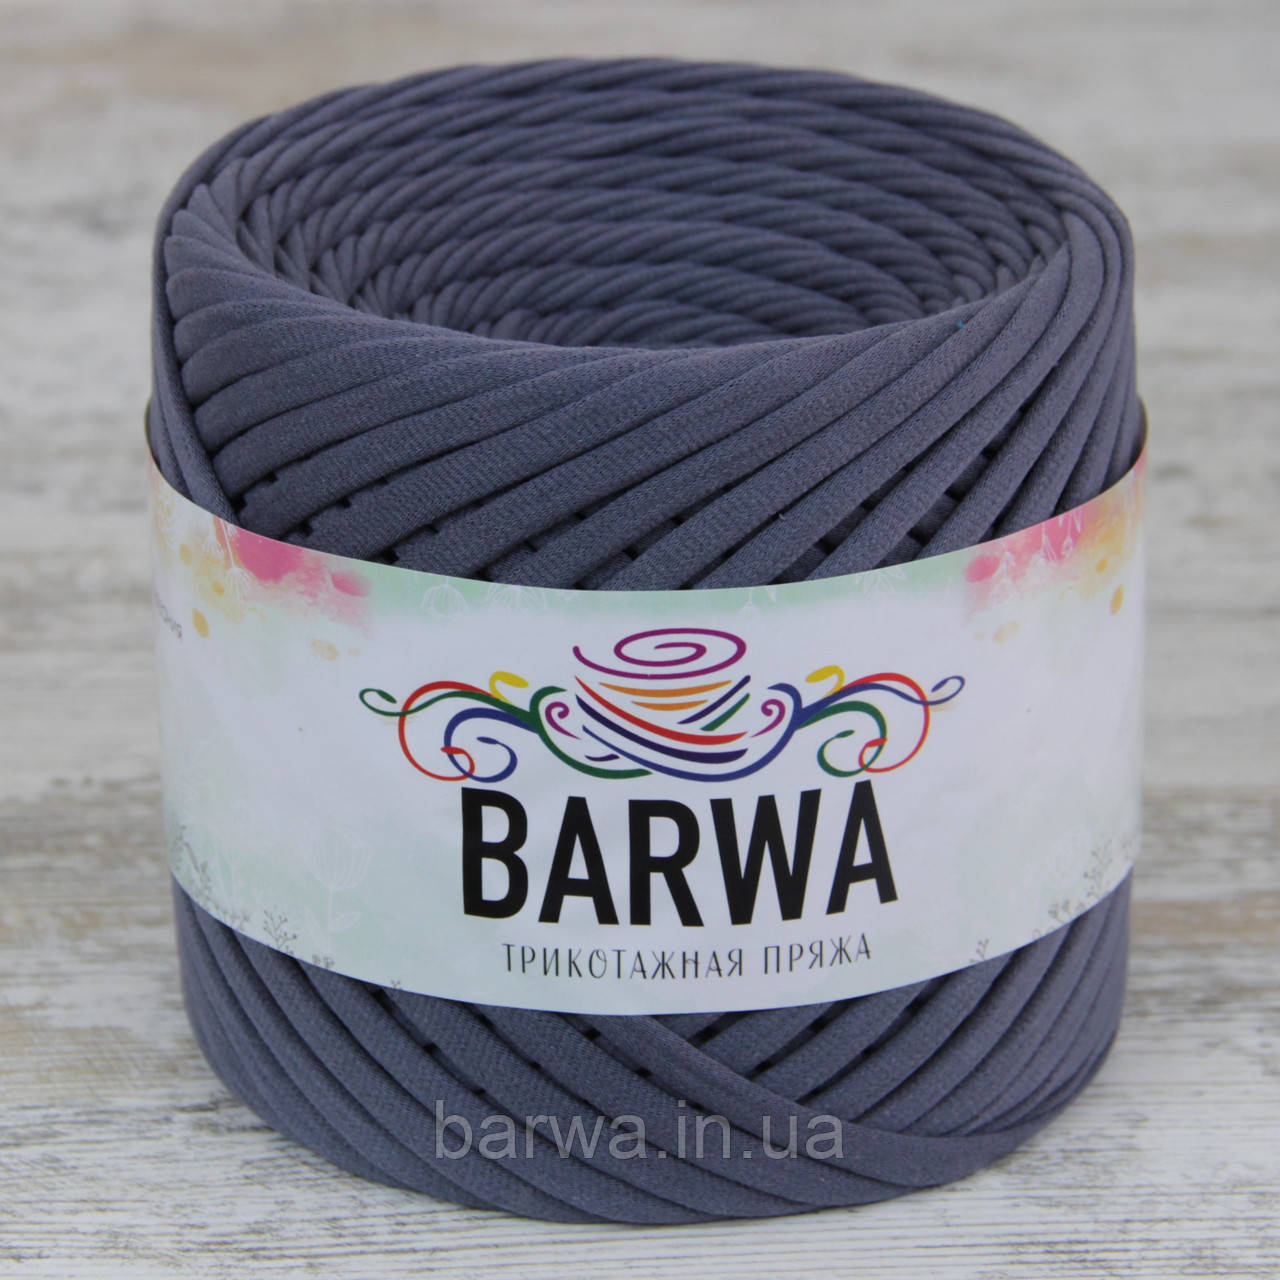 Пряжа трикотажна BARWA 7-9 мм, 50 метрів (півбобіна), колір Стоун